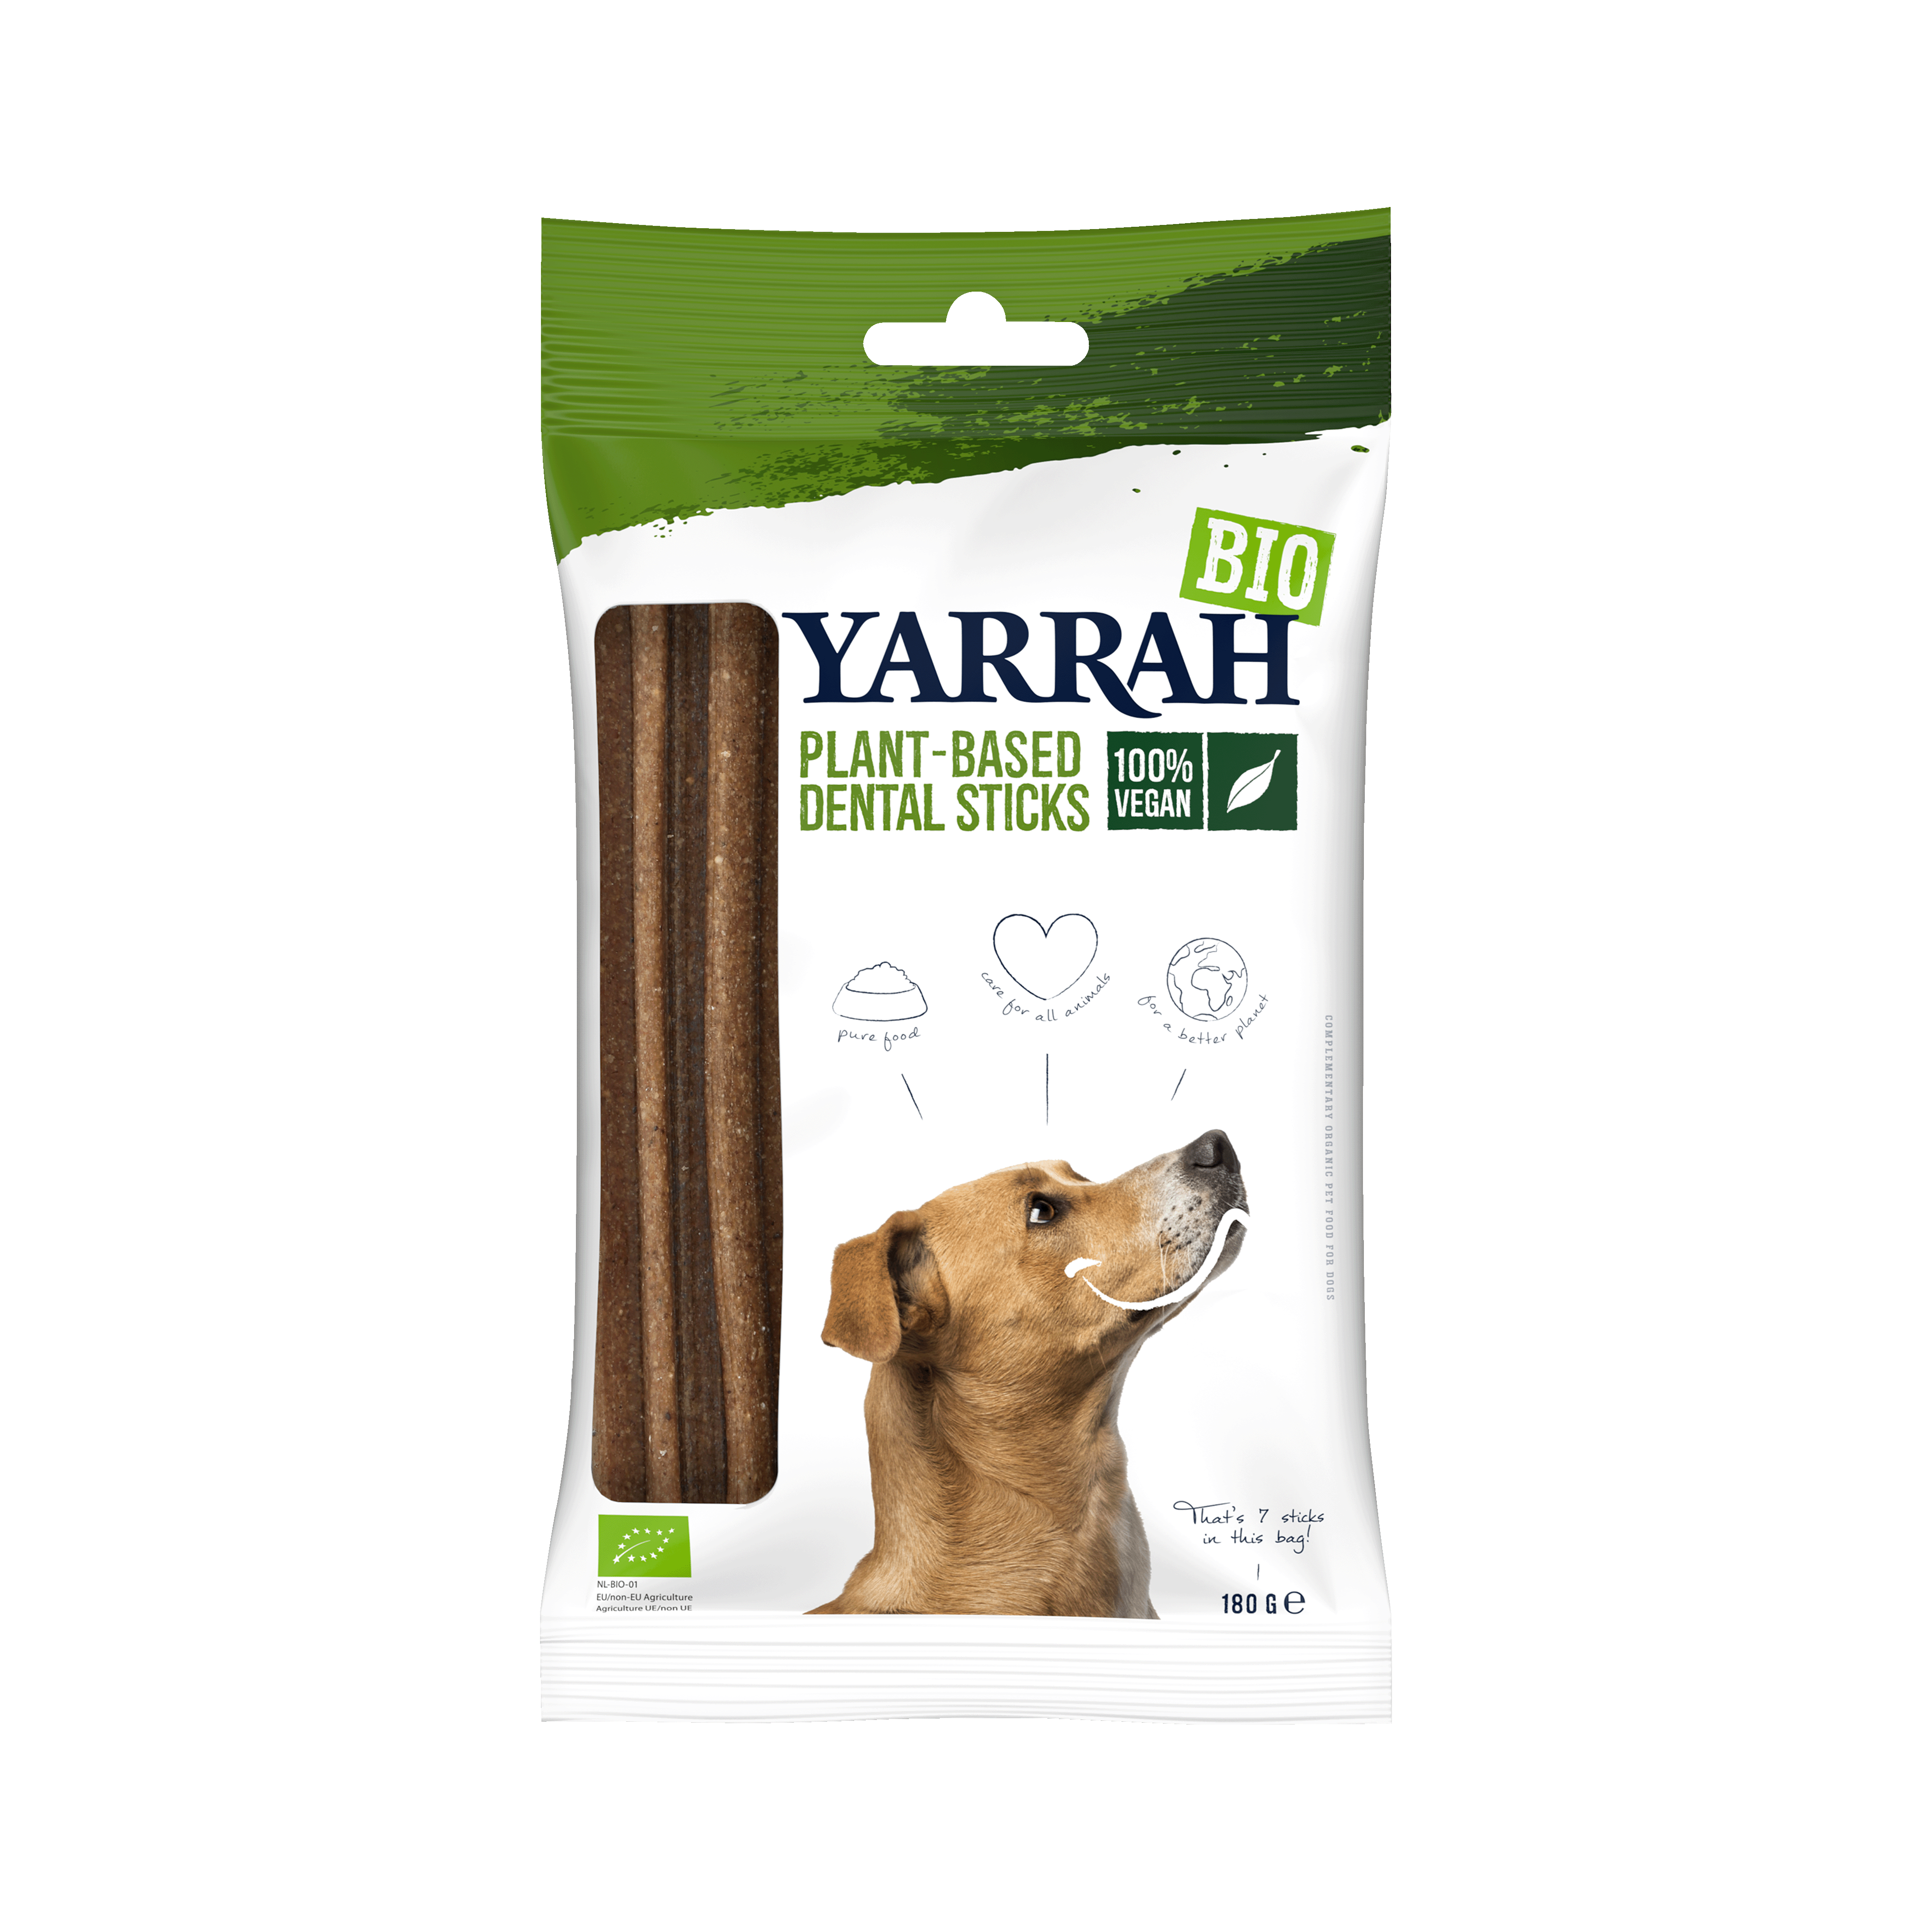 Yarrah biologische vegan dental sticks voor honden